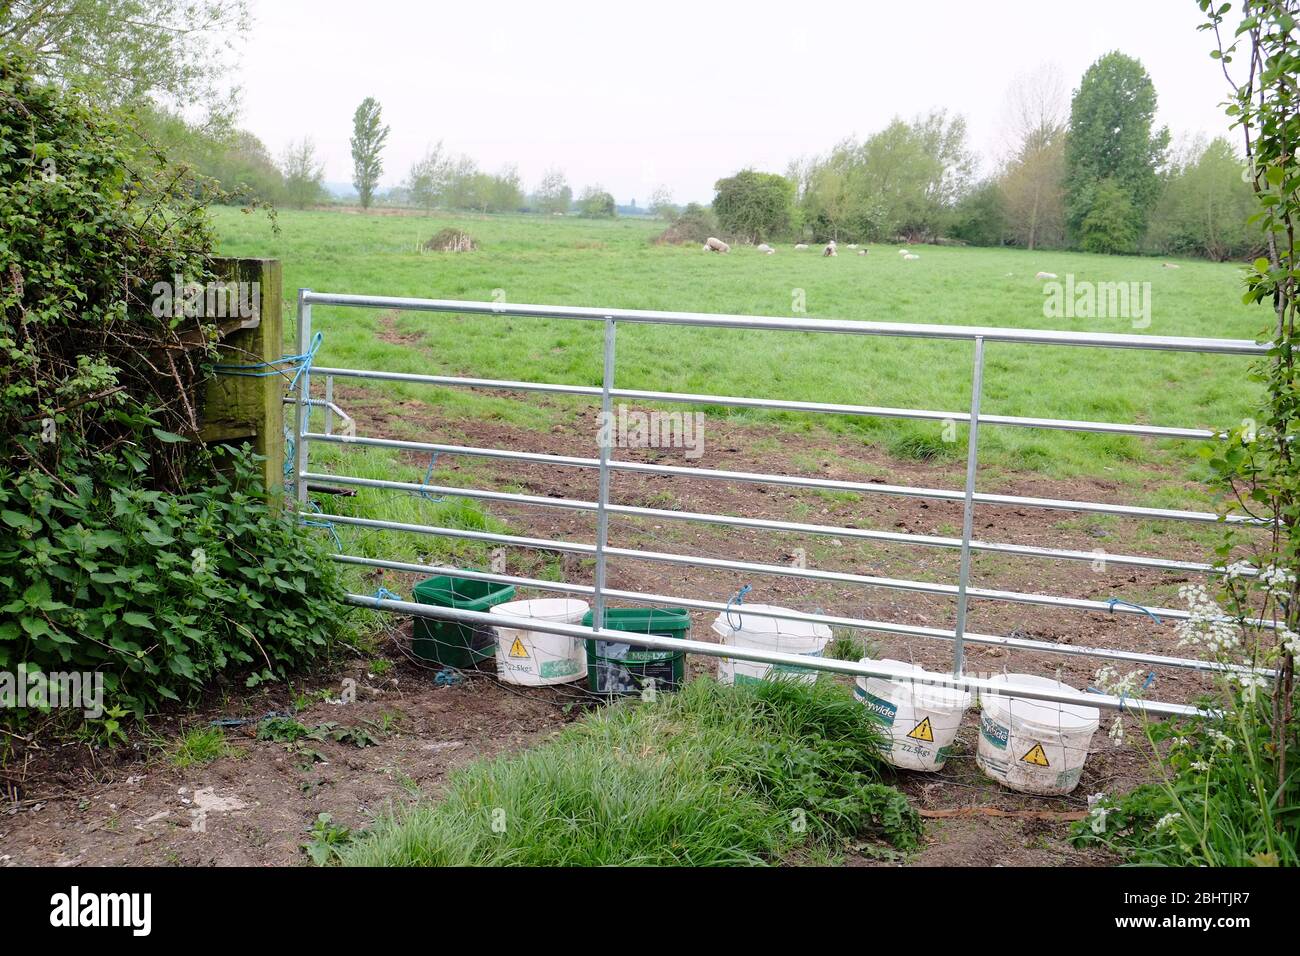 Aprile 2020 - i secchi d'acqua lasciati accanto ad un cancello dai contadini così c'è acqua fresca per il bestiame da bere Foto Stock